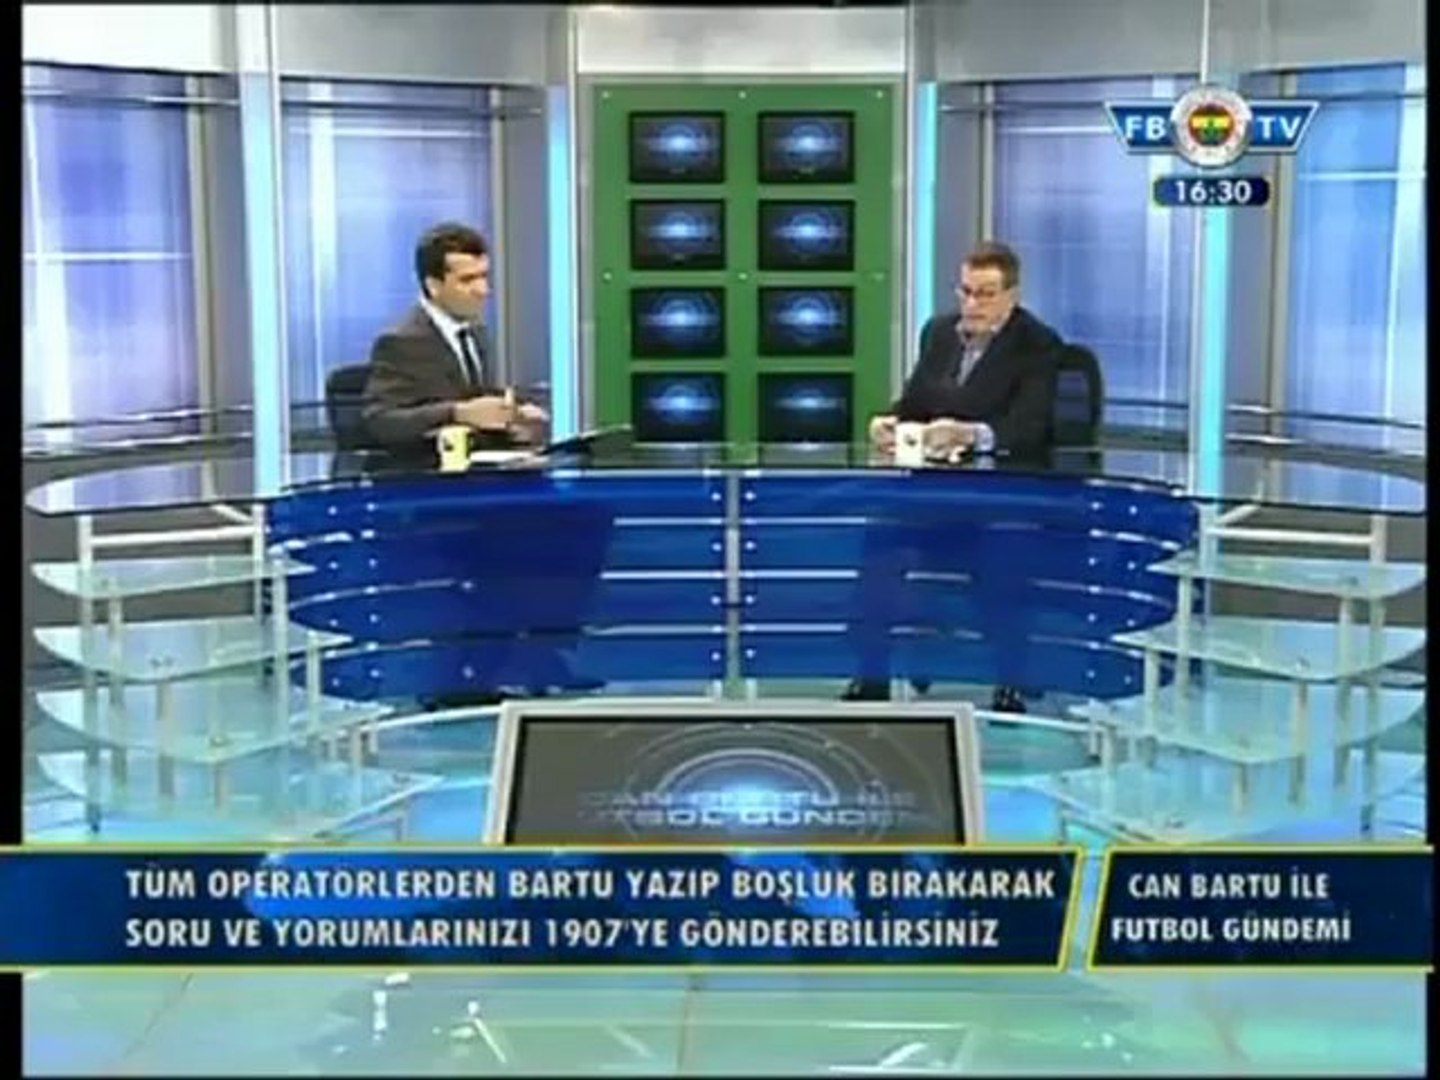 29 Kasım 2012 Can Bartu ile Futbol Gündemi Programı Fırat Aydınus Yorumu -  Dailymotion Video